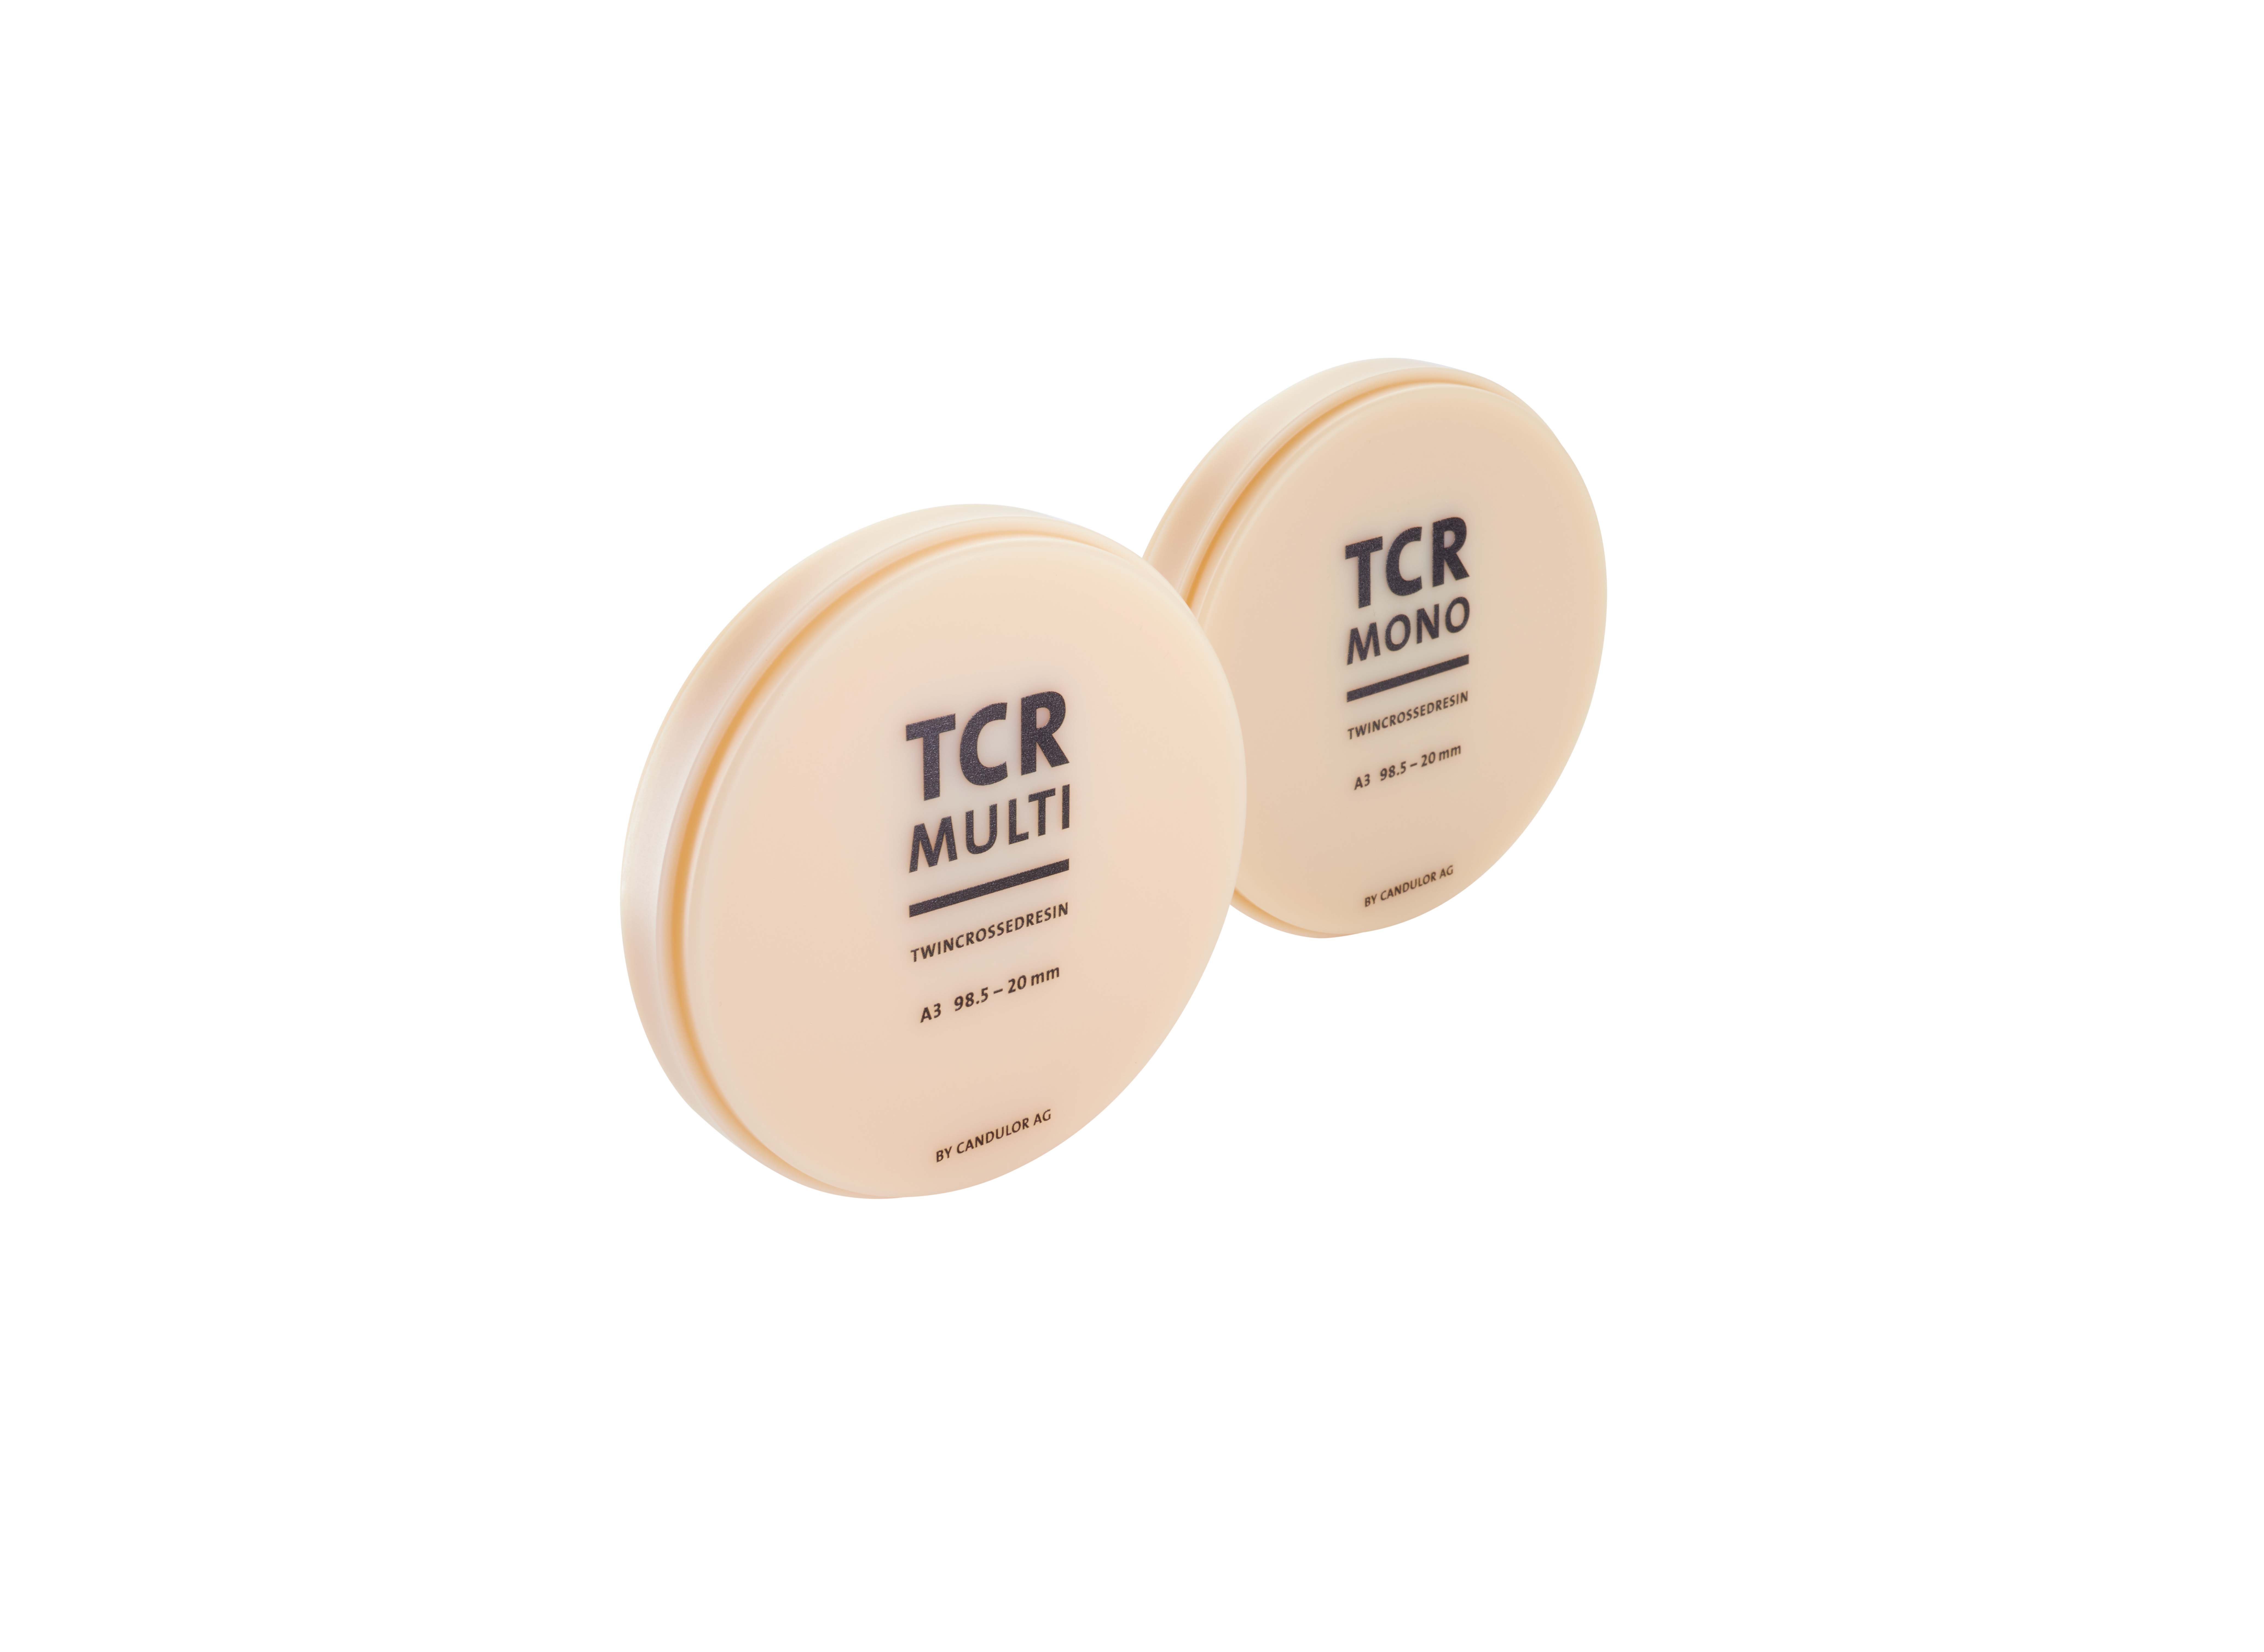 TCR Mono_TCR Multi